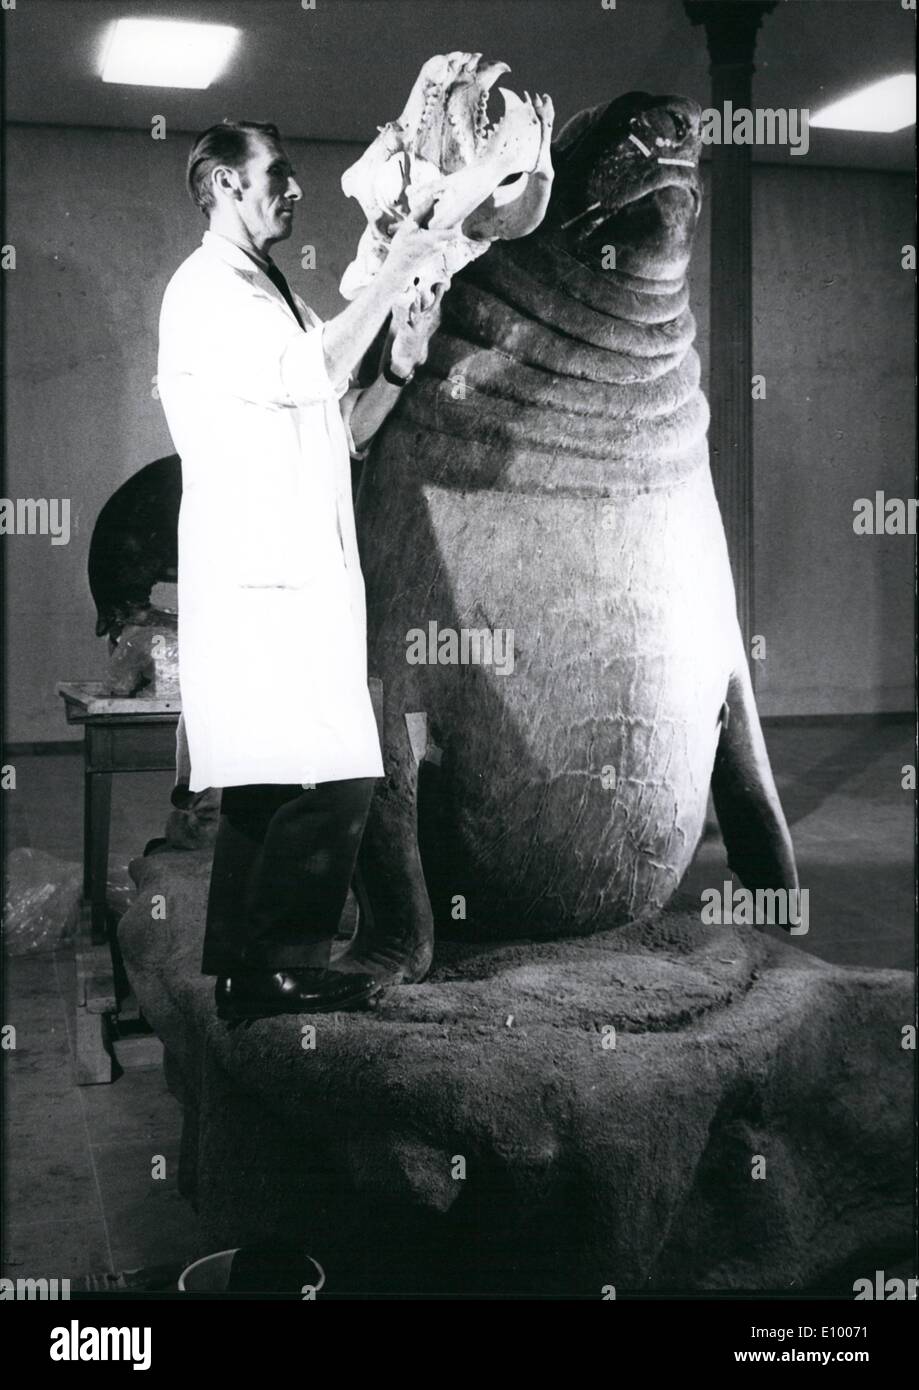 1. Januar 1972 - setzen Meer Elefanten aus der Stuttgarter Zoo "Wilhelma" In ein Museum: Das biologische Museum in Karlsruhe eine '' große '' Ausstellungsstück bald erhalten. Meer-Elefant "Tristan", ein ehemaliger Favorit in den Stuttgarter Zoo, starb im Februar 1970 wurde, nach seinem Tod in Karleruhe gefüllt. Jetzt dieses Präparat ist fast fertig und wird bald ins Museum genommen werden. Das Foto zeigt Meer-Elefant '' Tristan'' zusammen mit dem Taxi-Dermist. Stockfoto